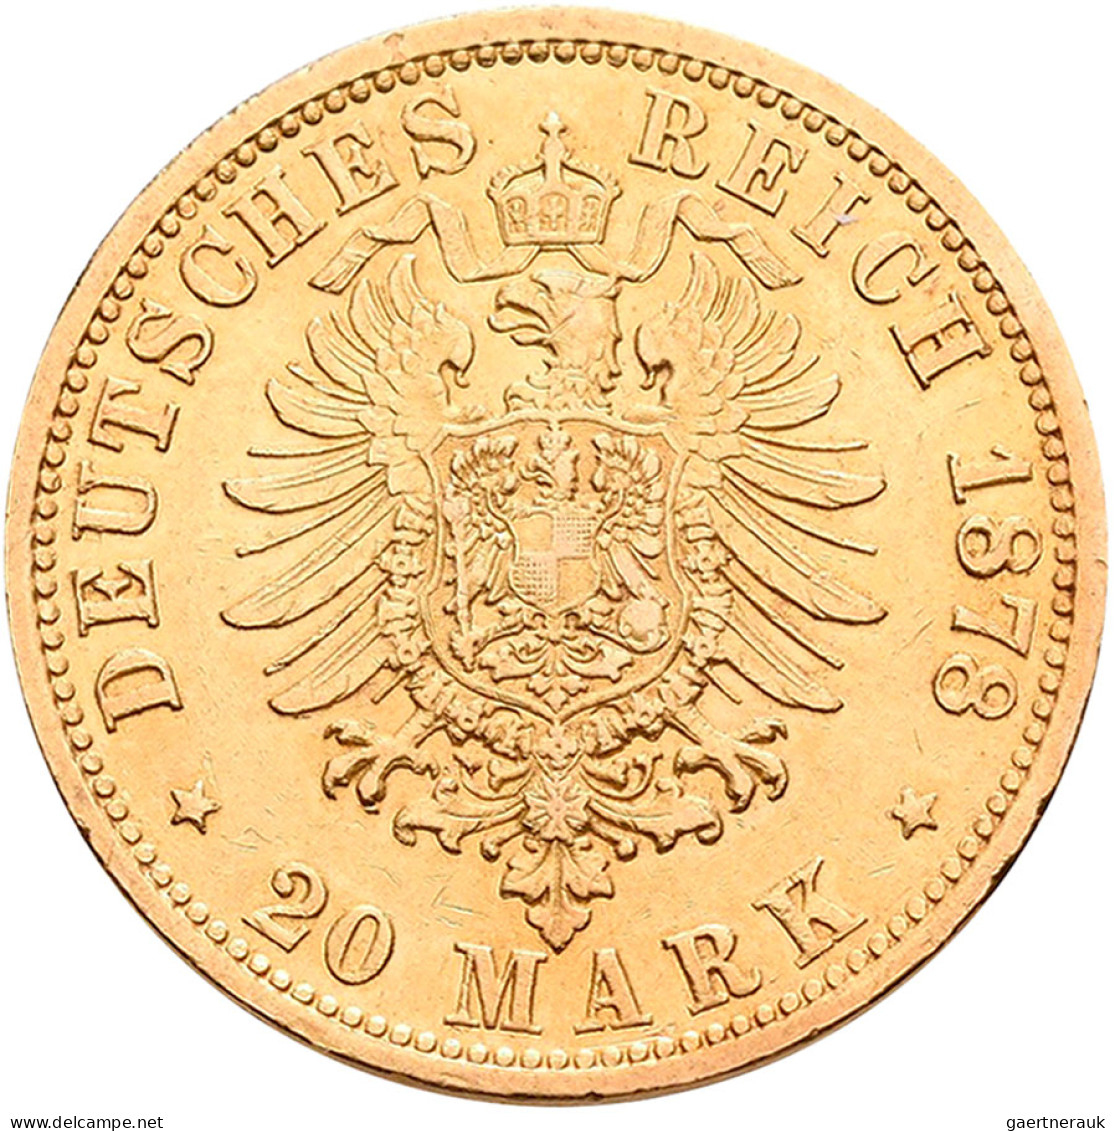 Hamburg - Anlagegold: Freie Und Hansestadt: 20 Mark 1878, Jaeger 210. 7,965 G, 9 - 5, 10 & 20 Mark Or